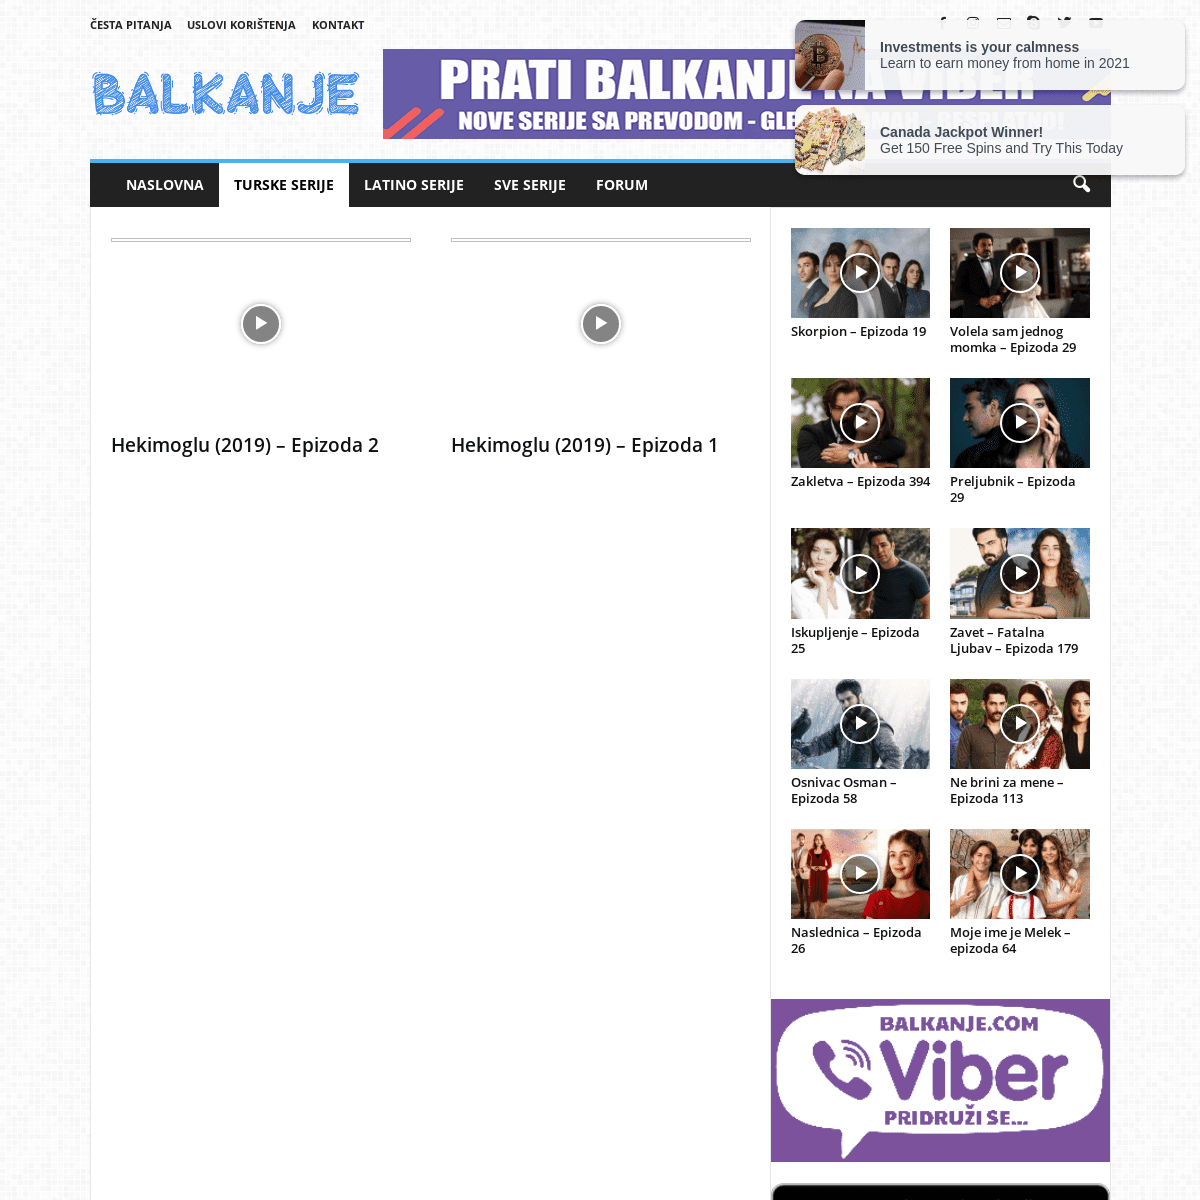 A complete backup of https://balkanje.com/turske-serije/hekimoglu-2019/